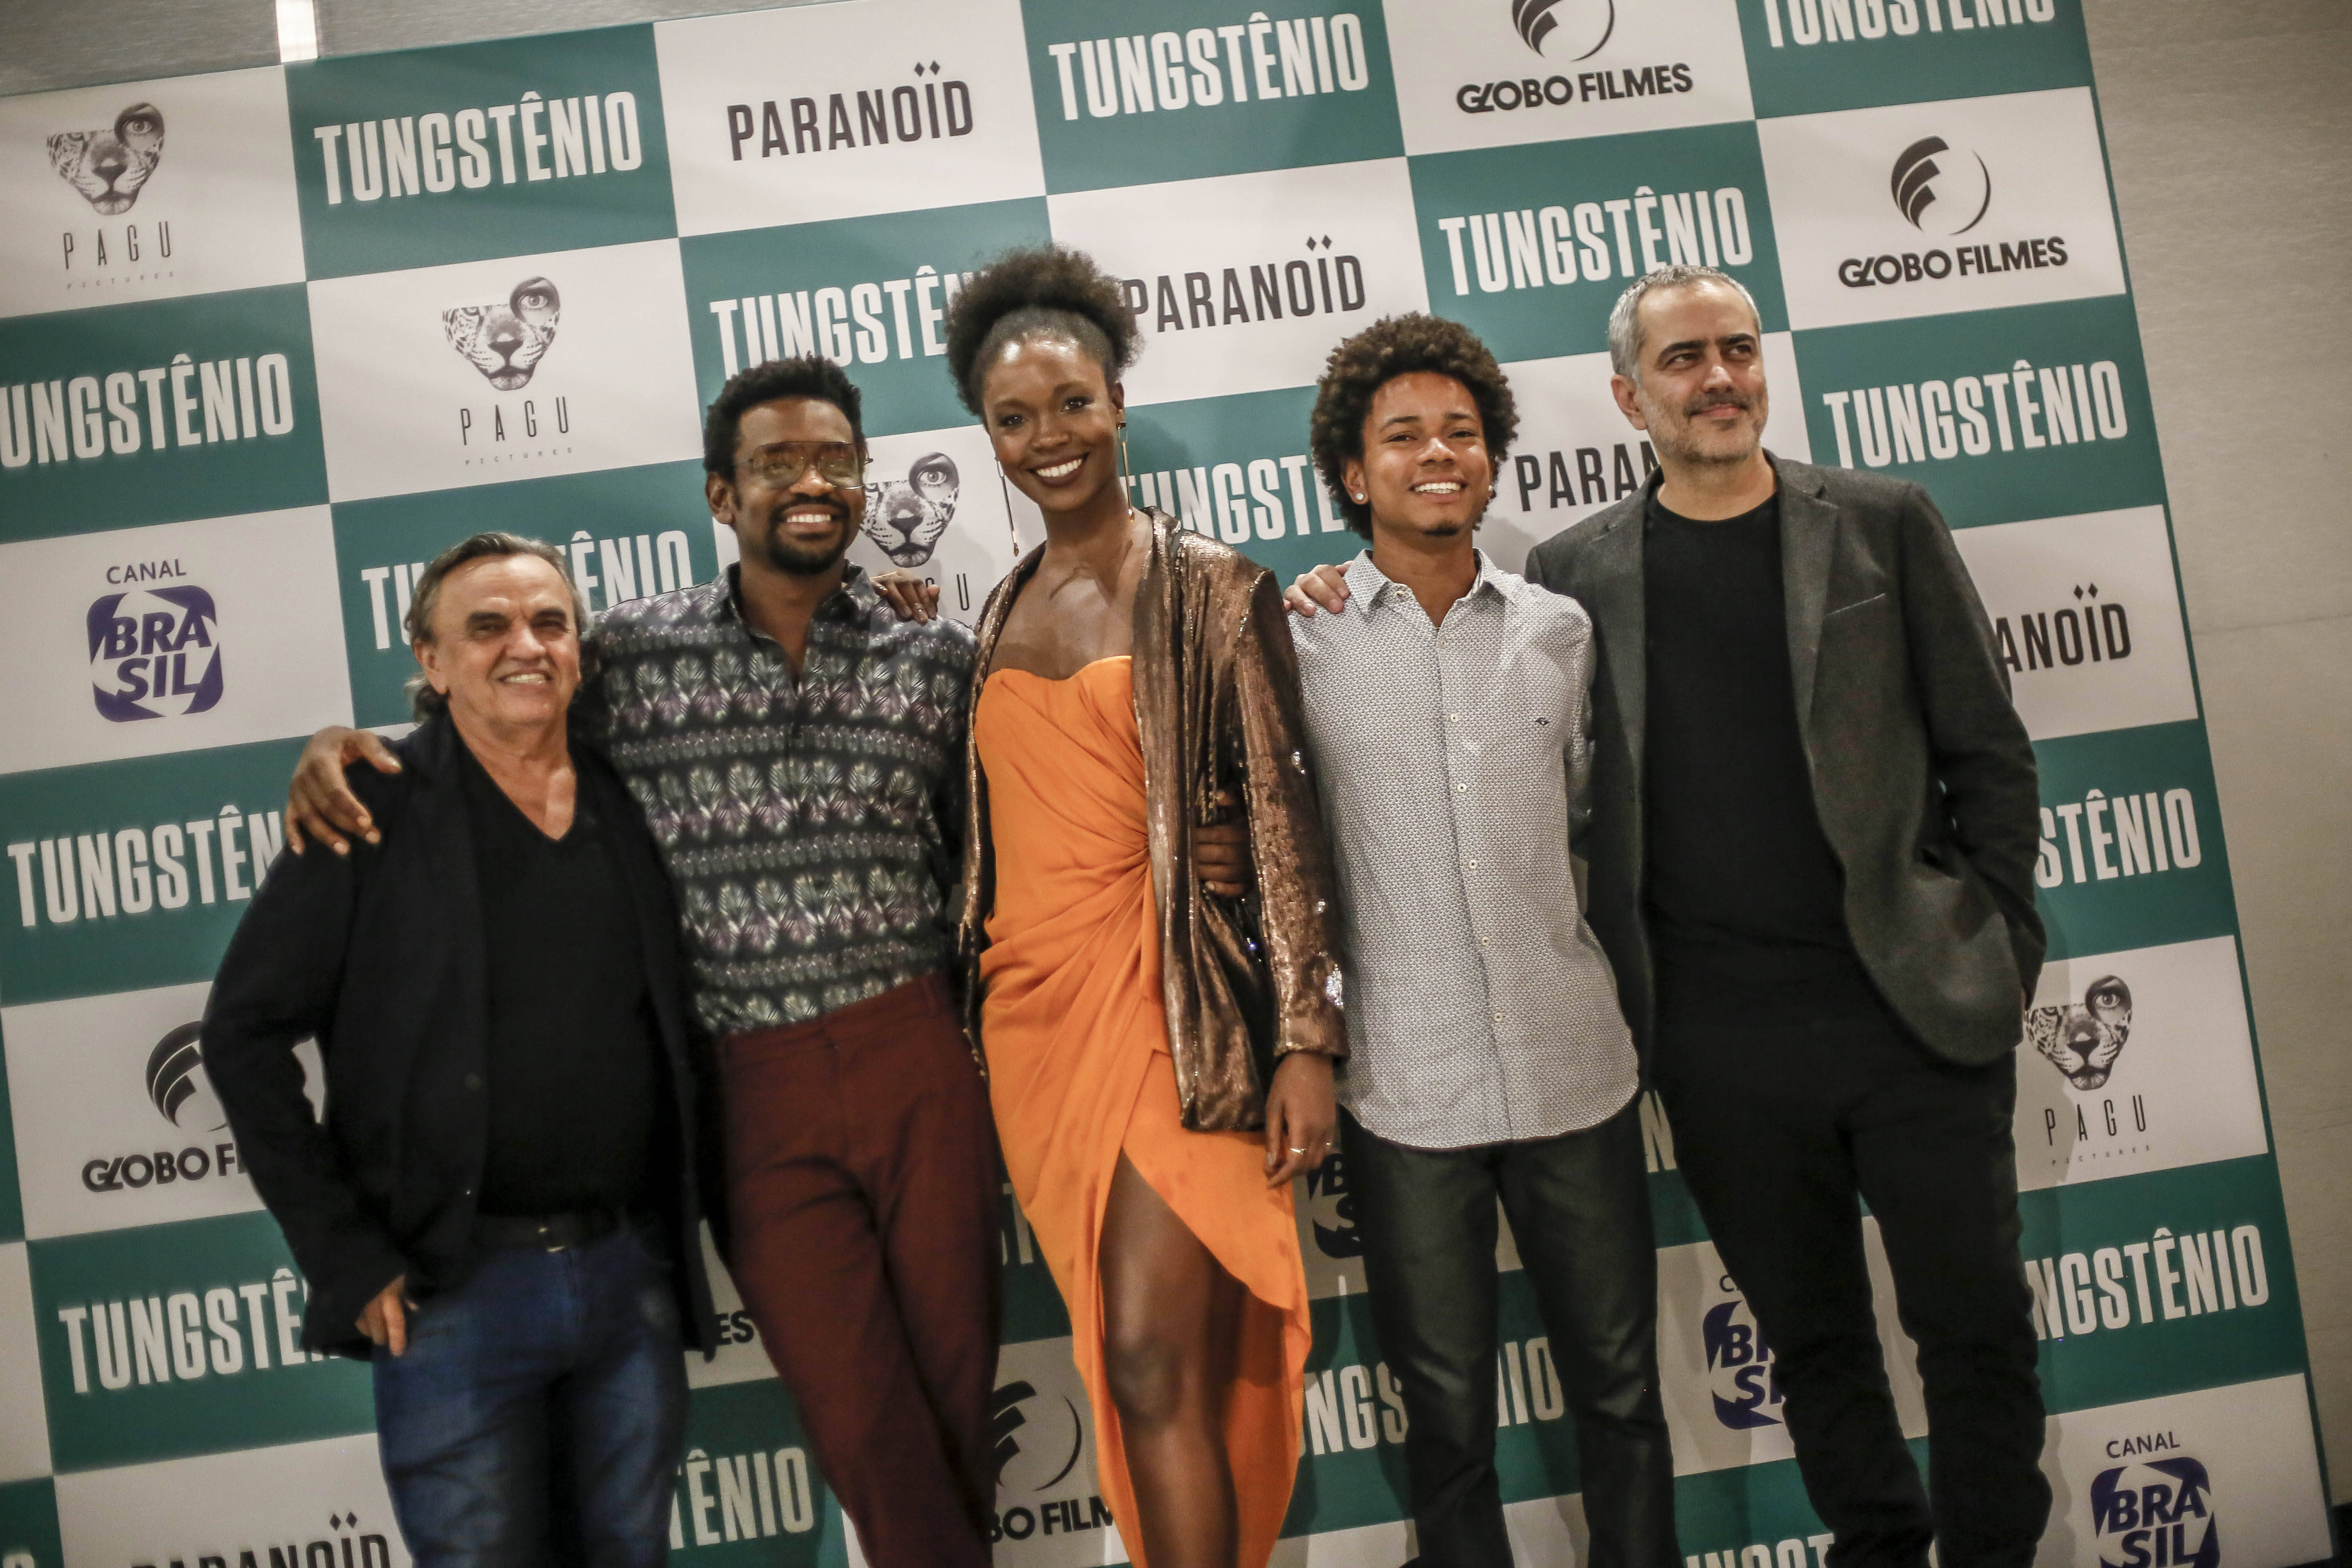 Celebridades comparecem à pré-estreia de "Tungstênio". Foto: Divulgação